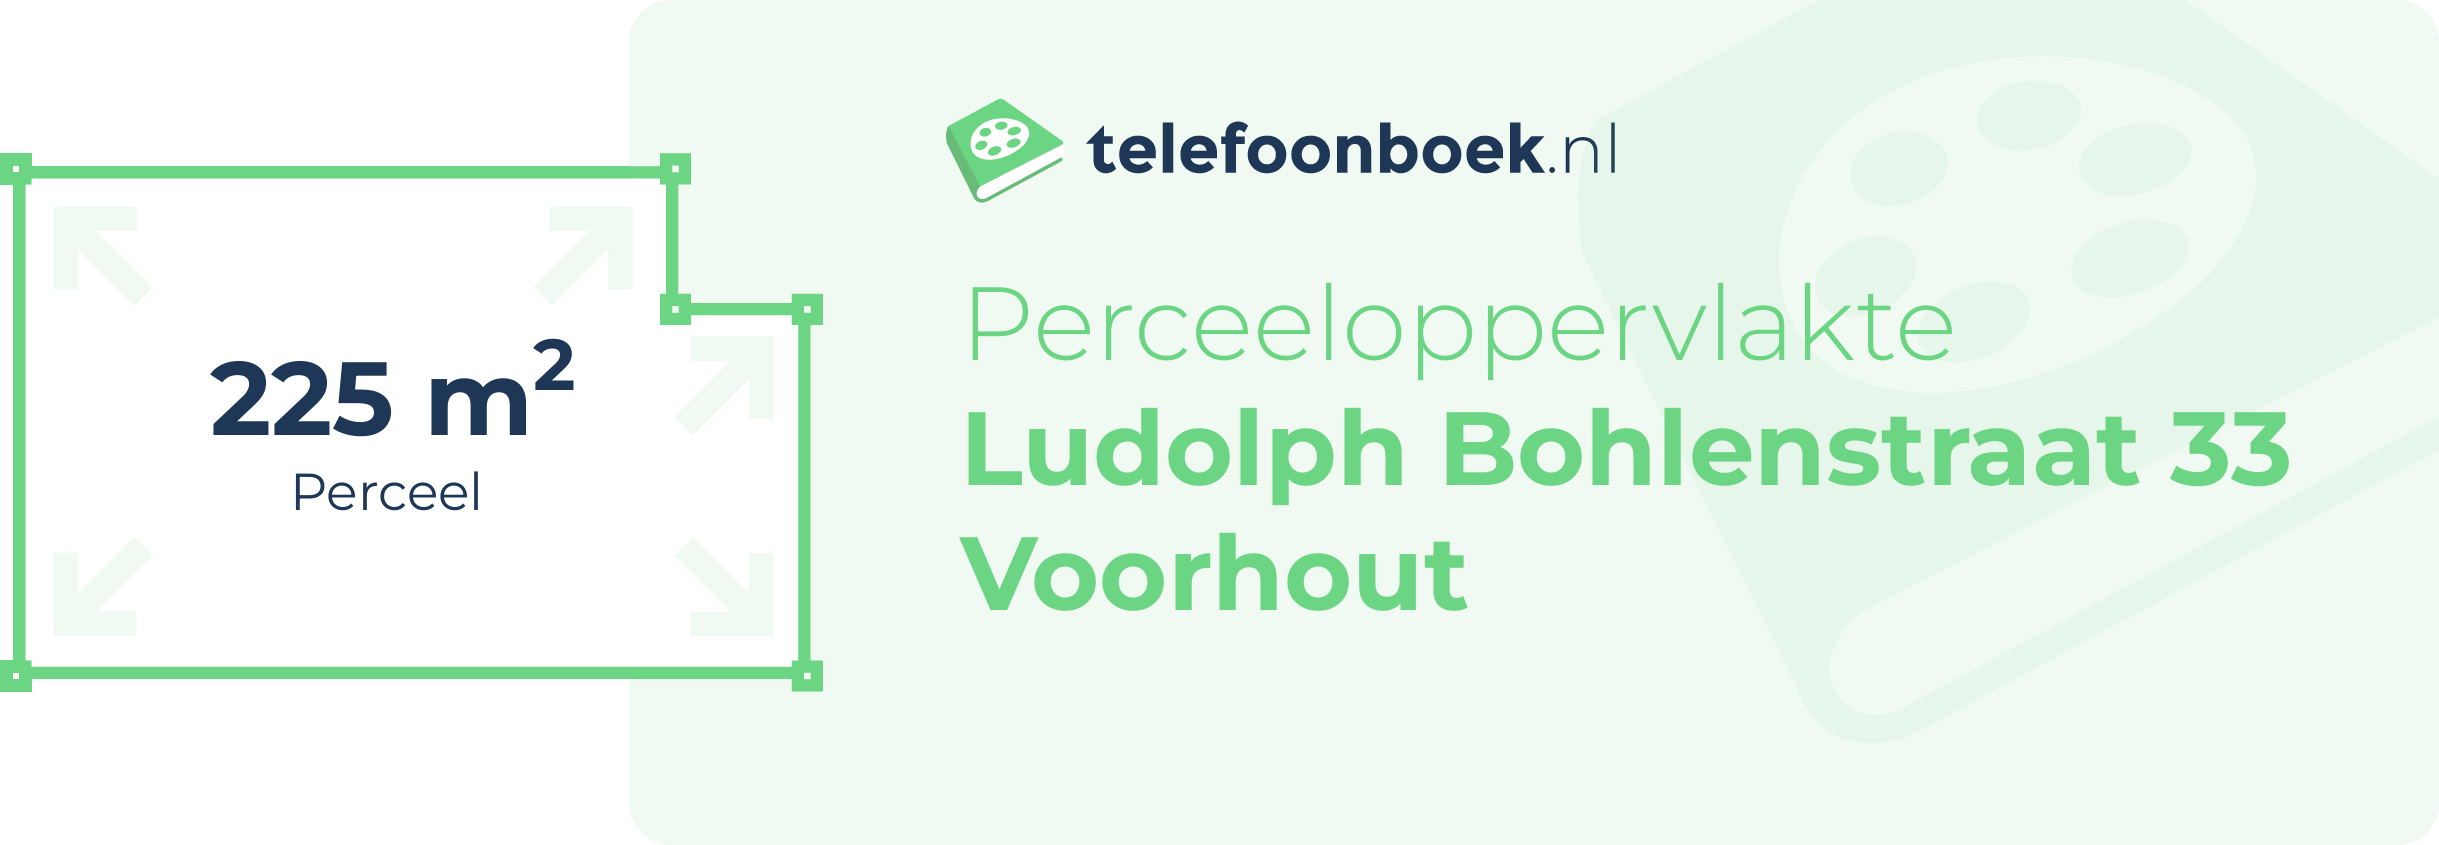 Perceeloppervlakte Ludolph Bohlenstraat 33 Voorhout